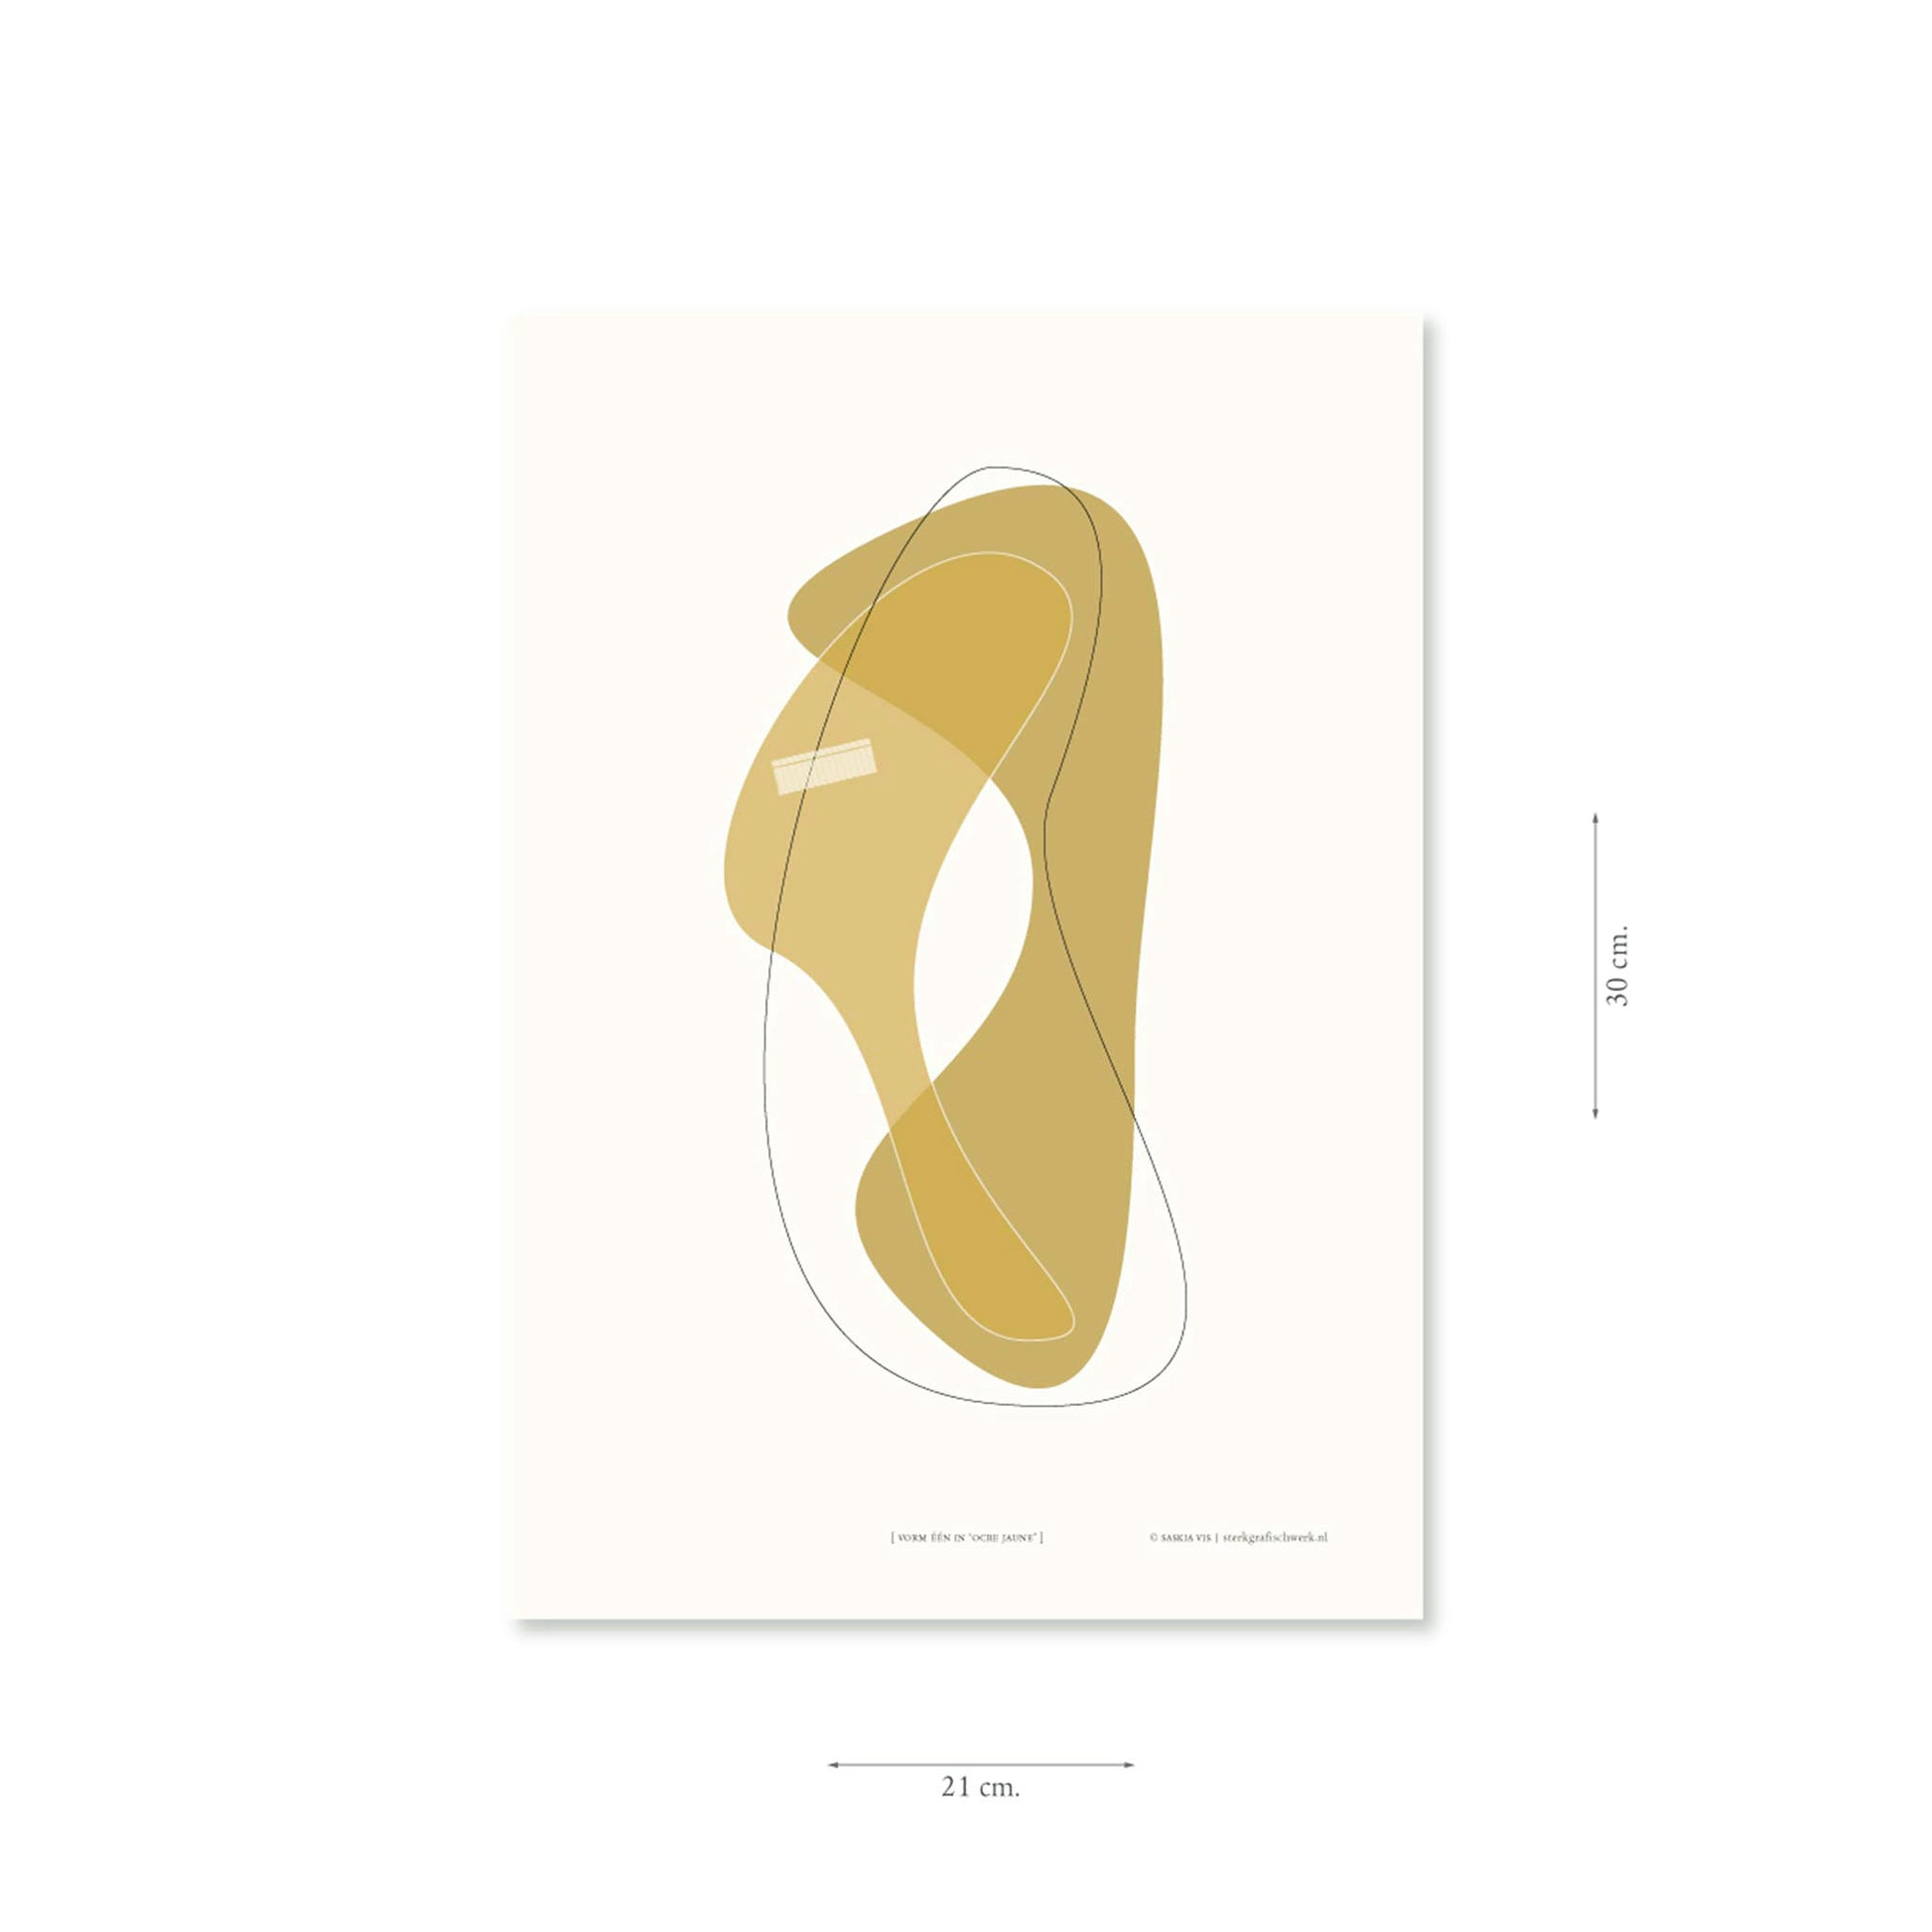 Productafbeelding poster "vorm één in ocre jaune" met aanduiding van het formaat erop weergegeven 21 x 30 cm